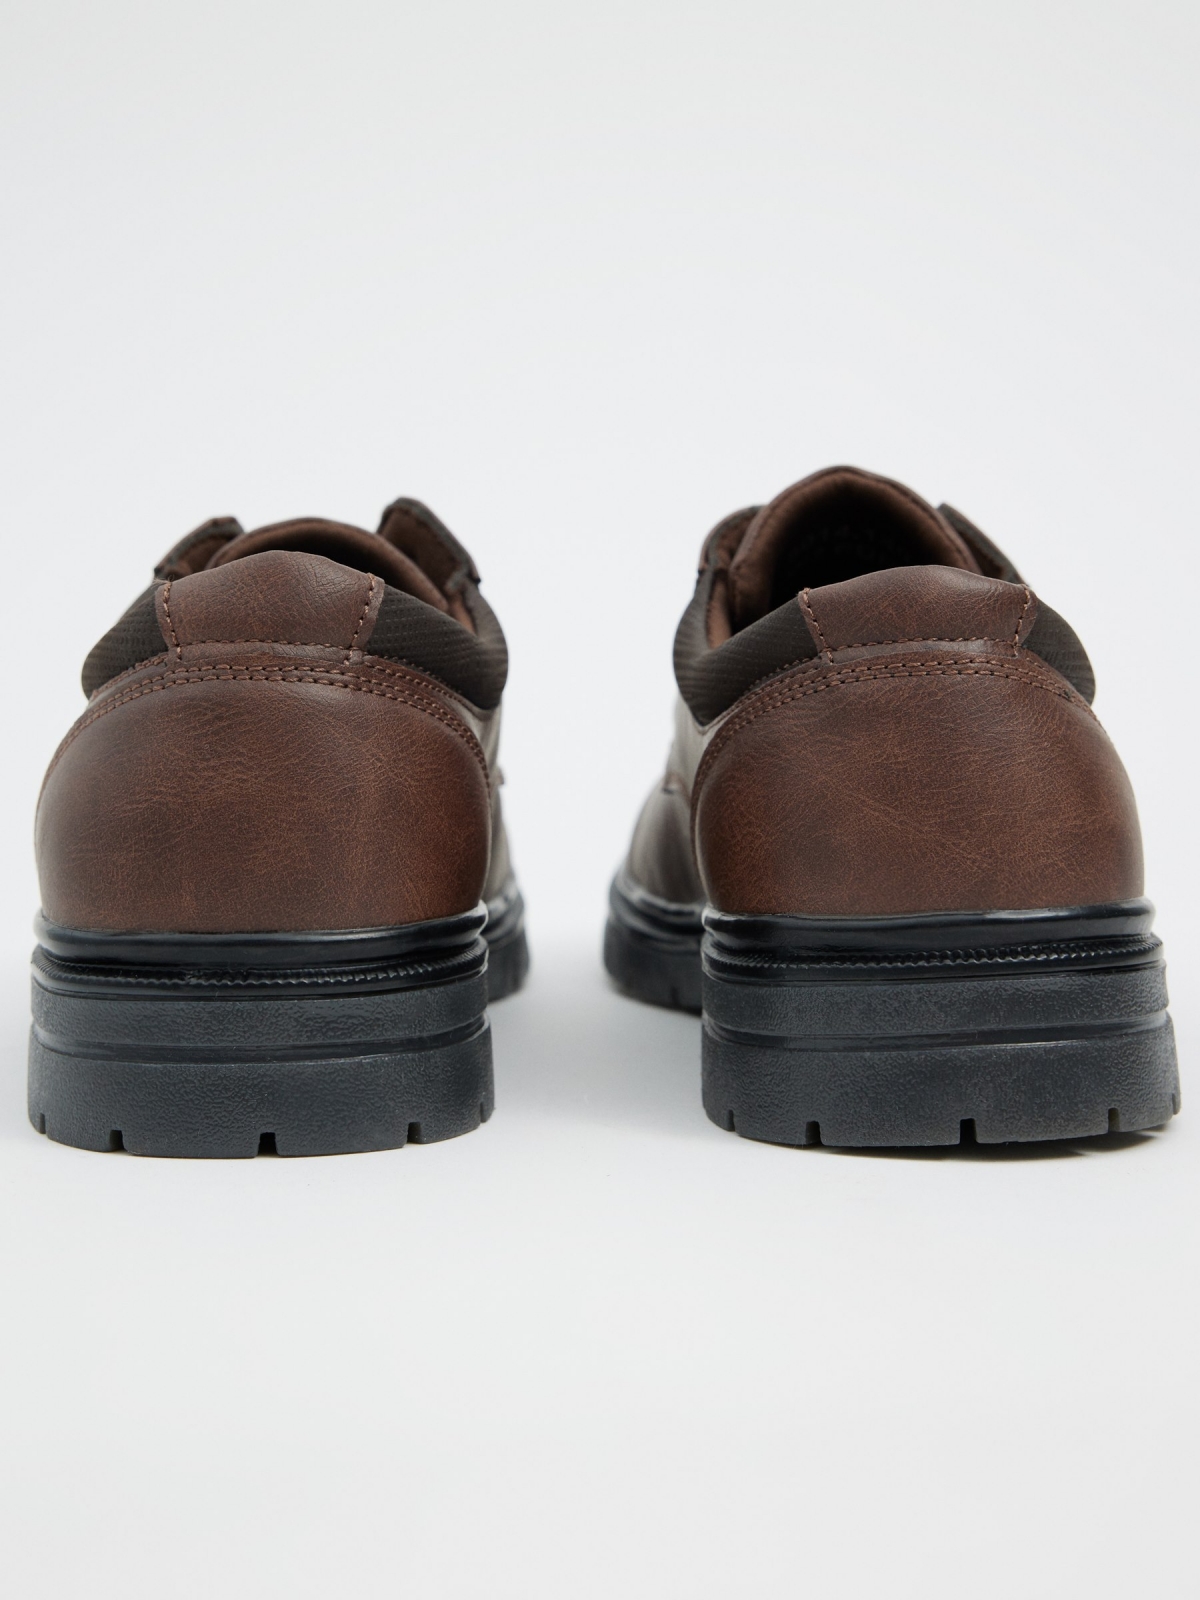 Sapato marrom efeito de couro marrom escuro vista detalhe